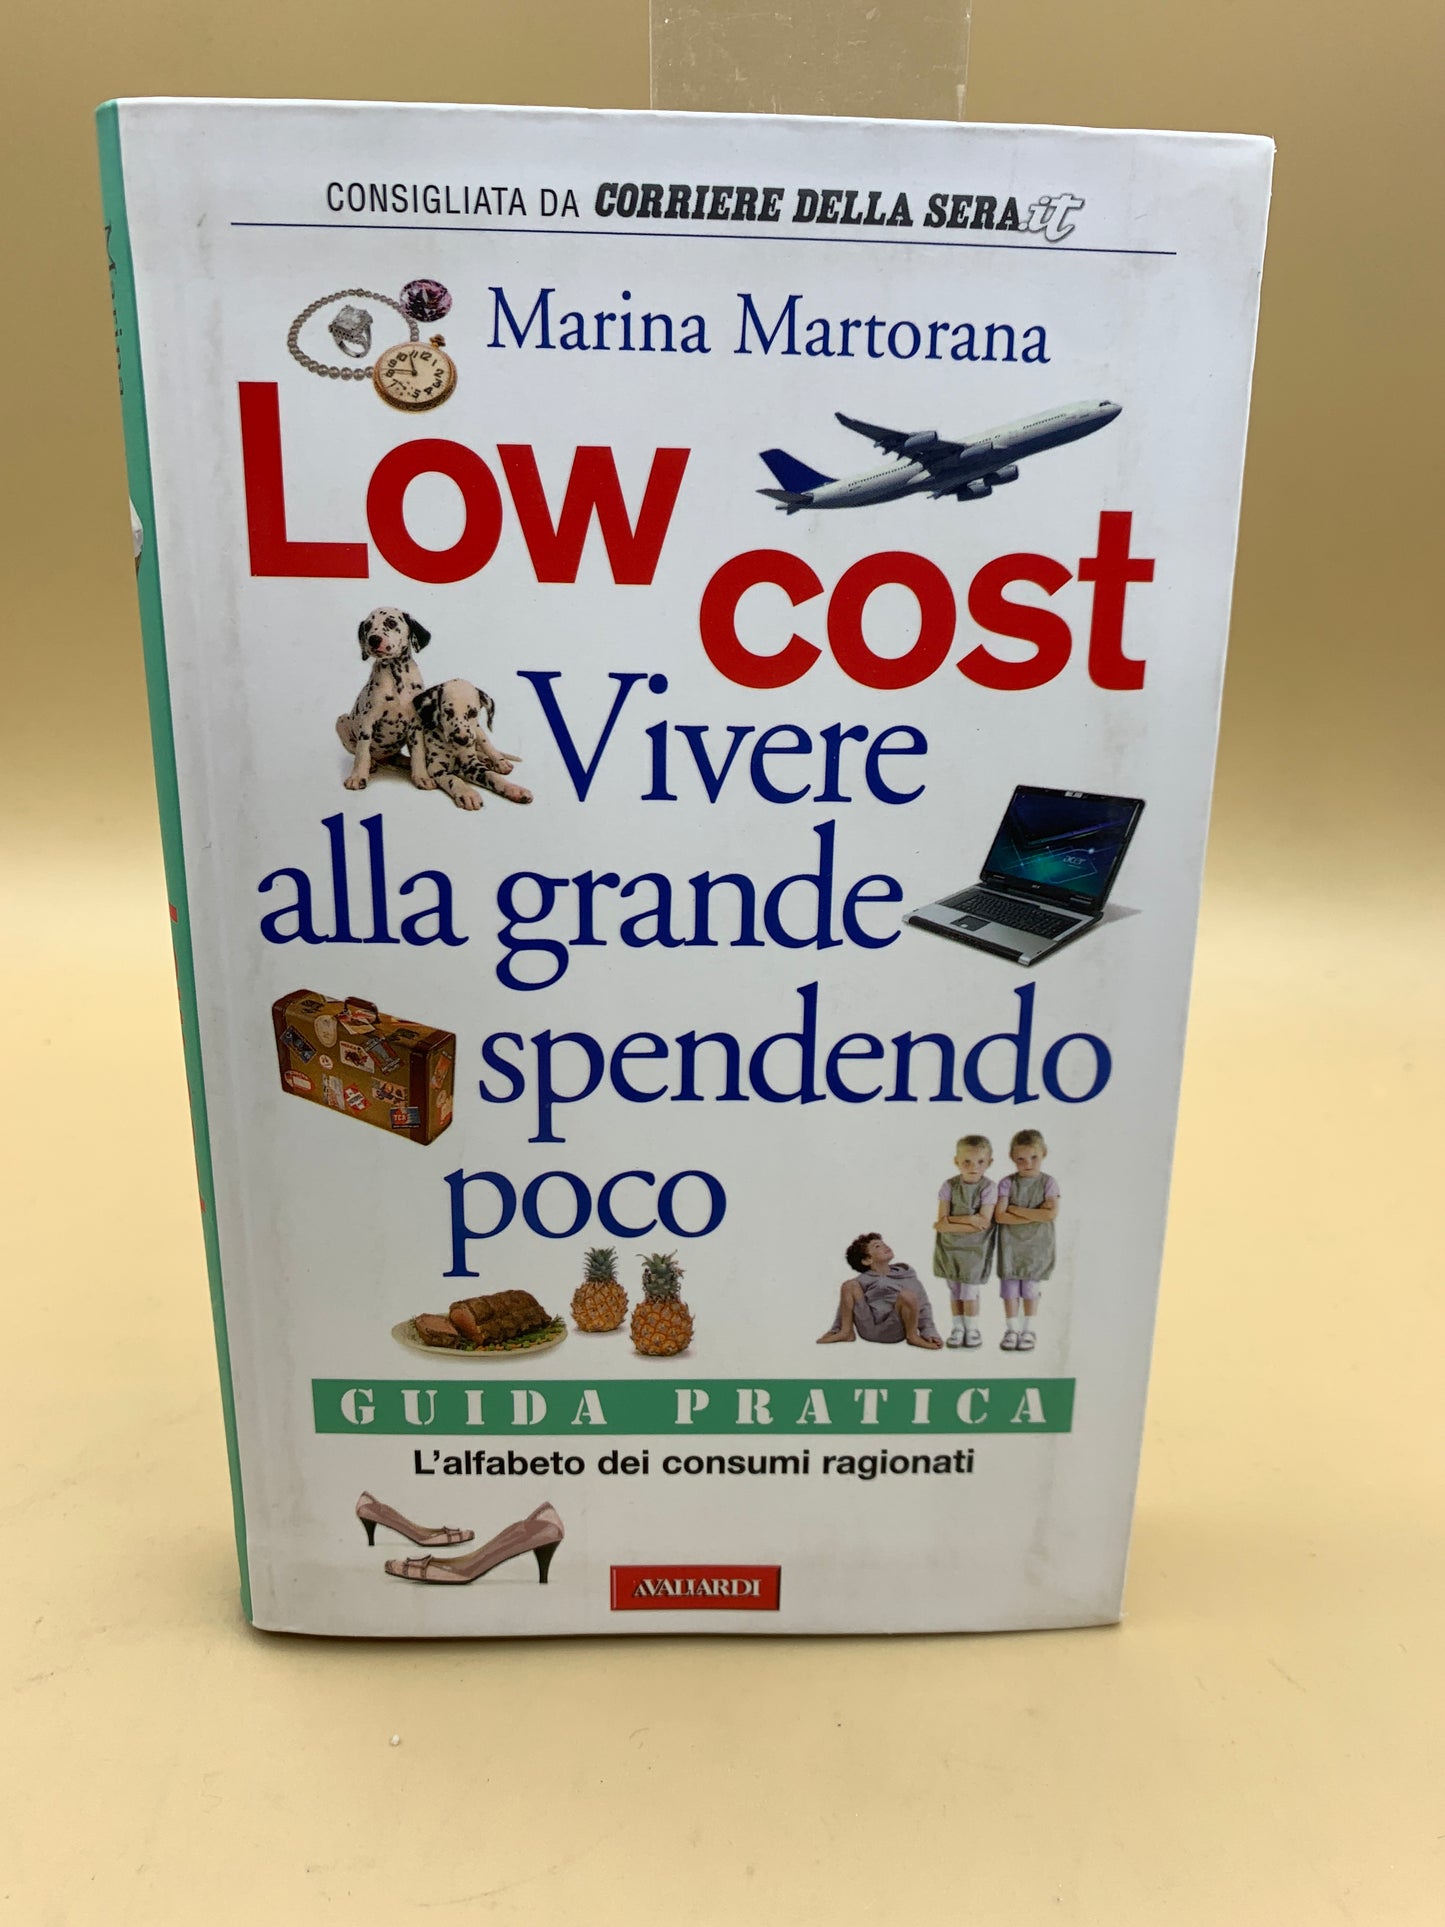 Niedrige Kosten – viel leben und wenig ausgeben – Marina Martorana